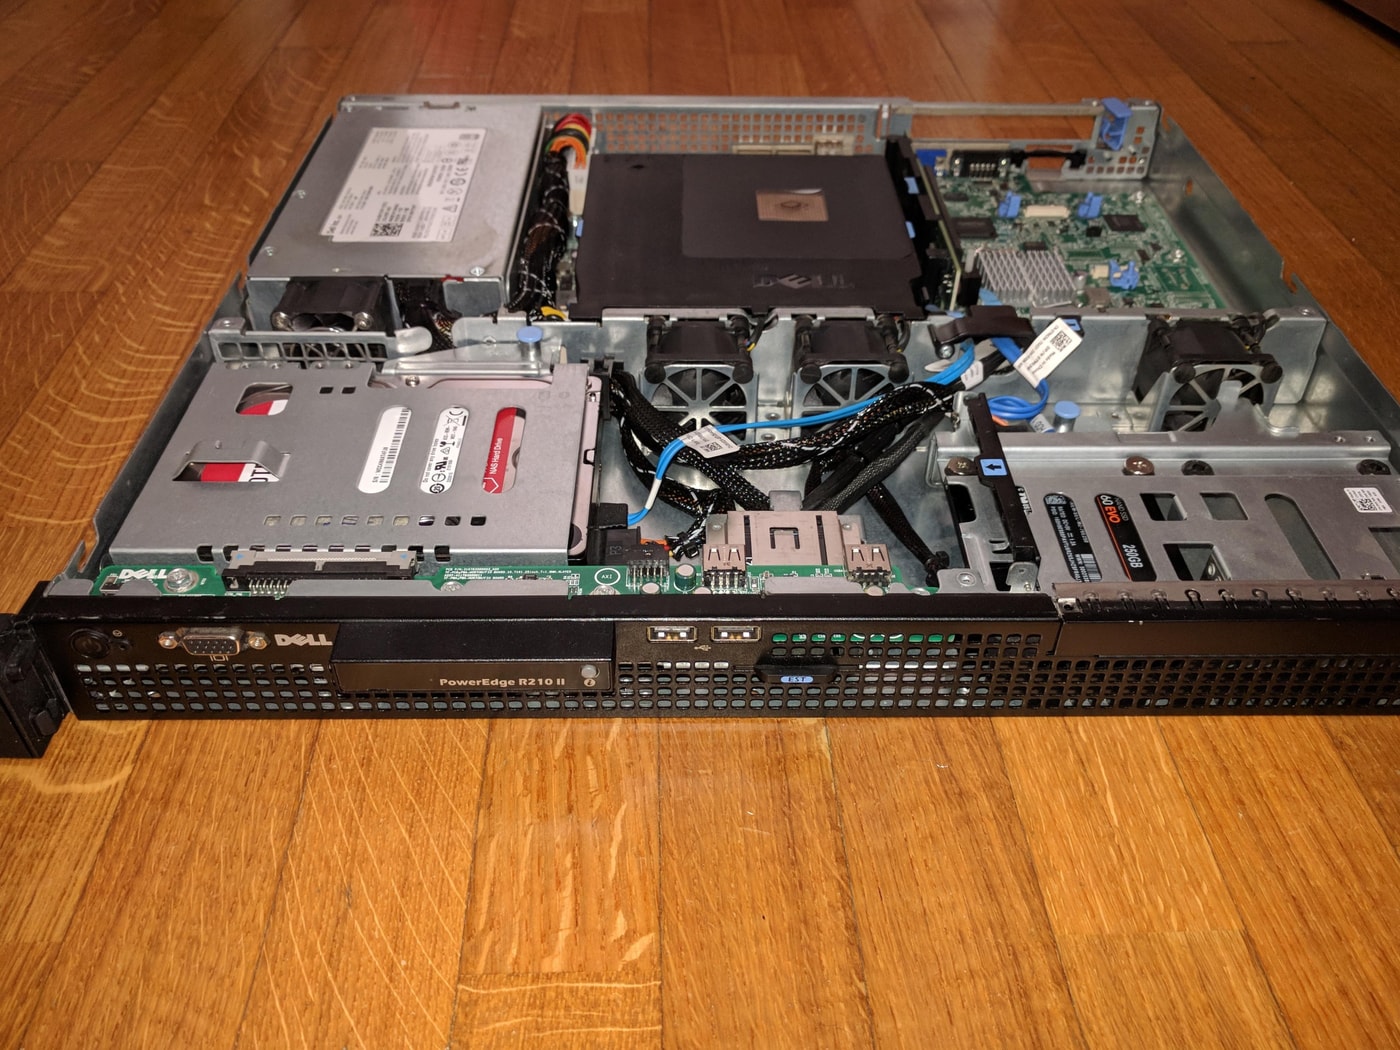 Server Dell R210 II